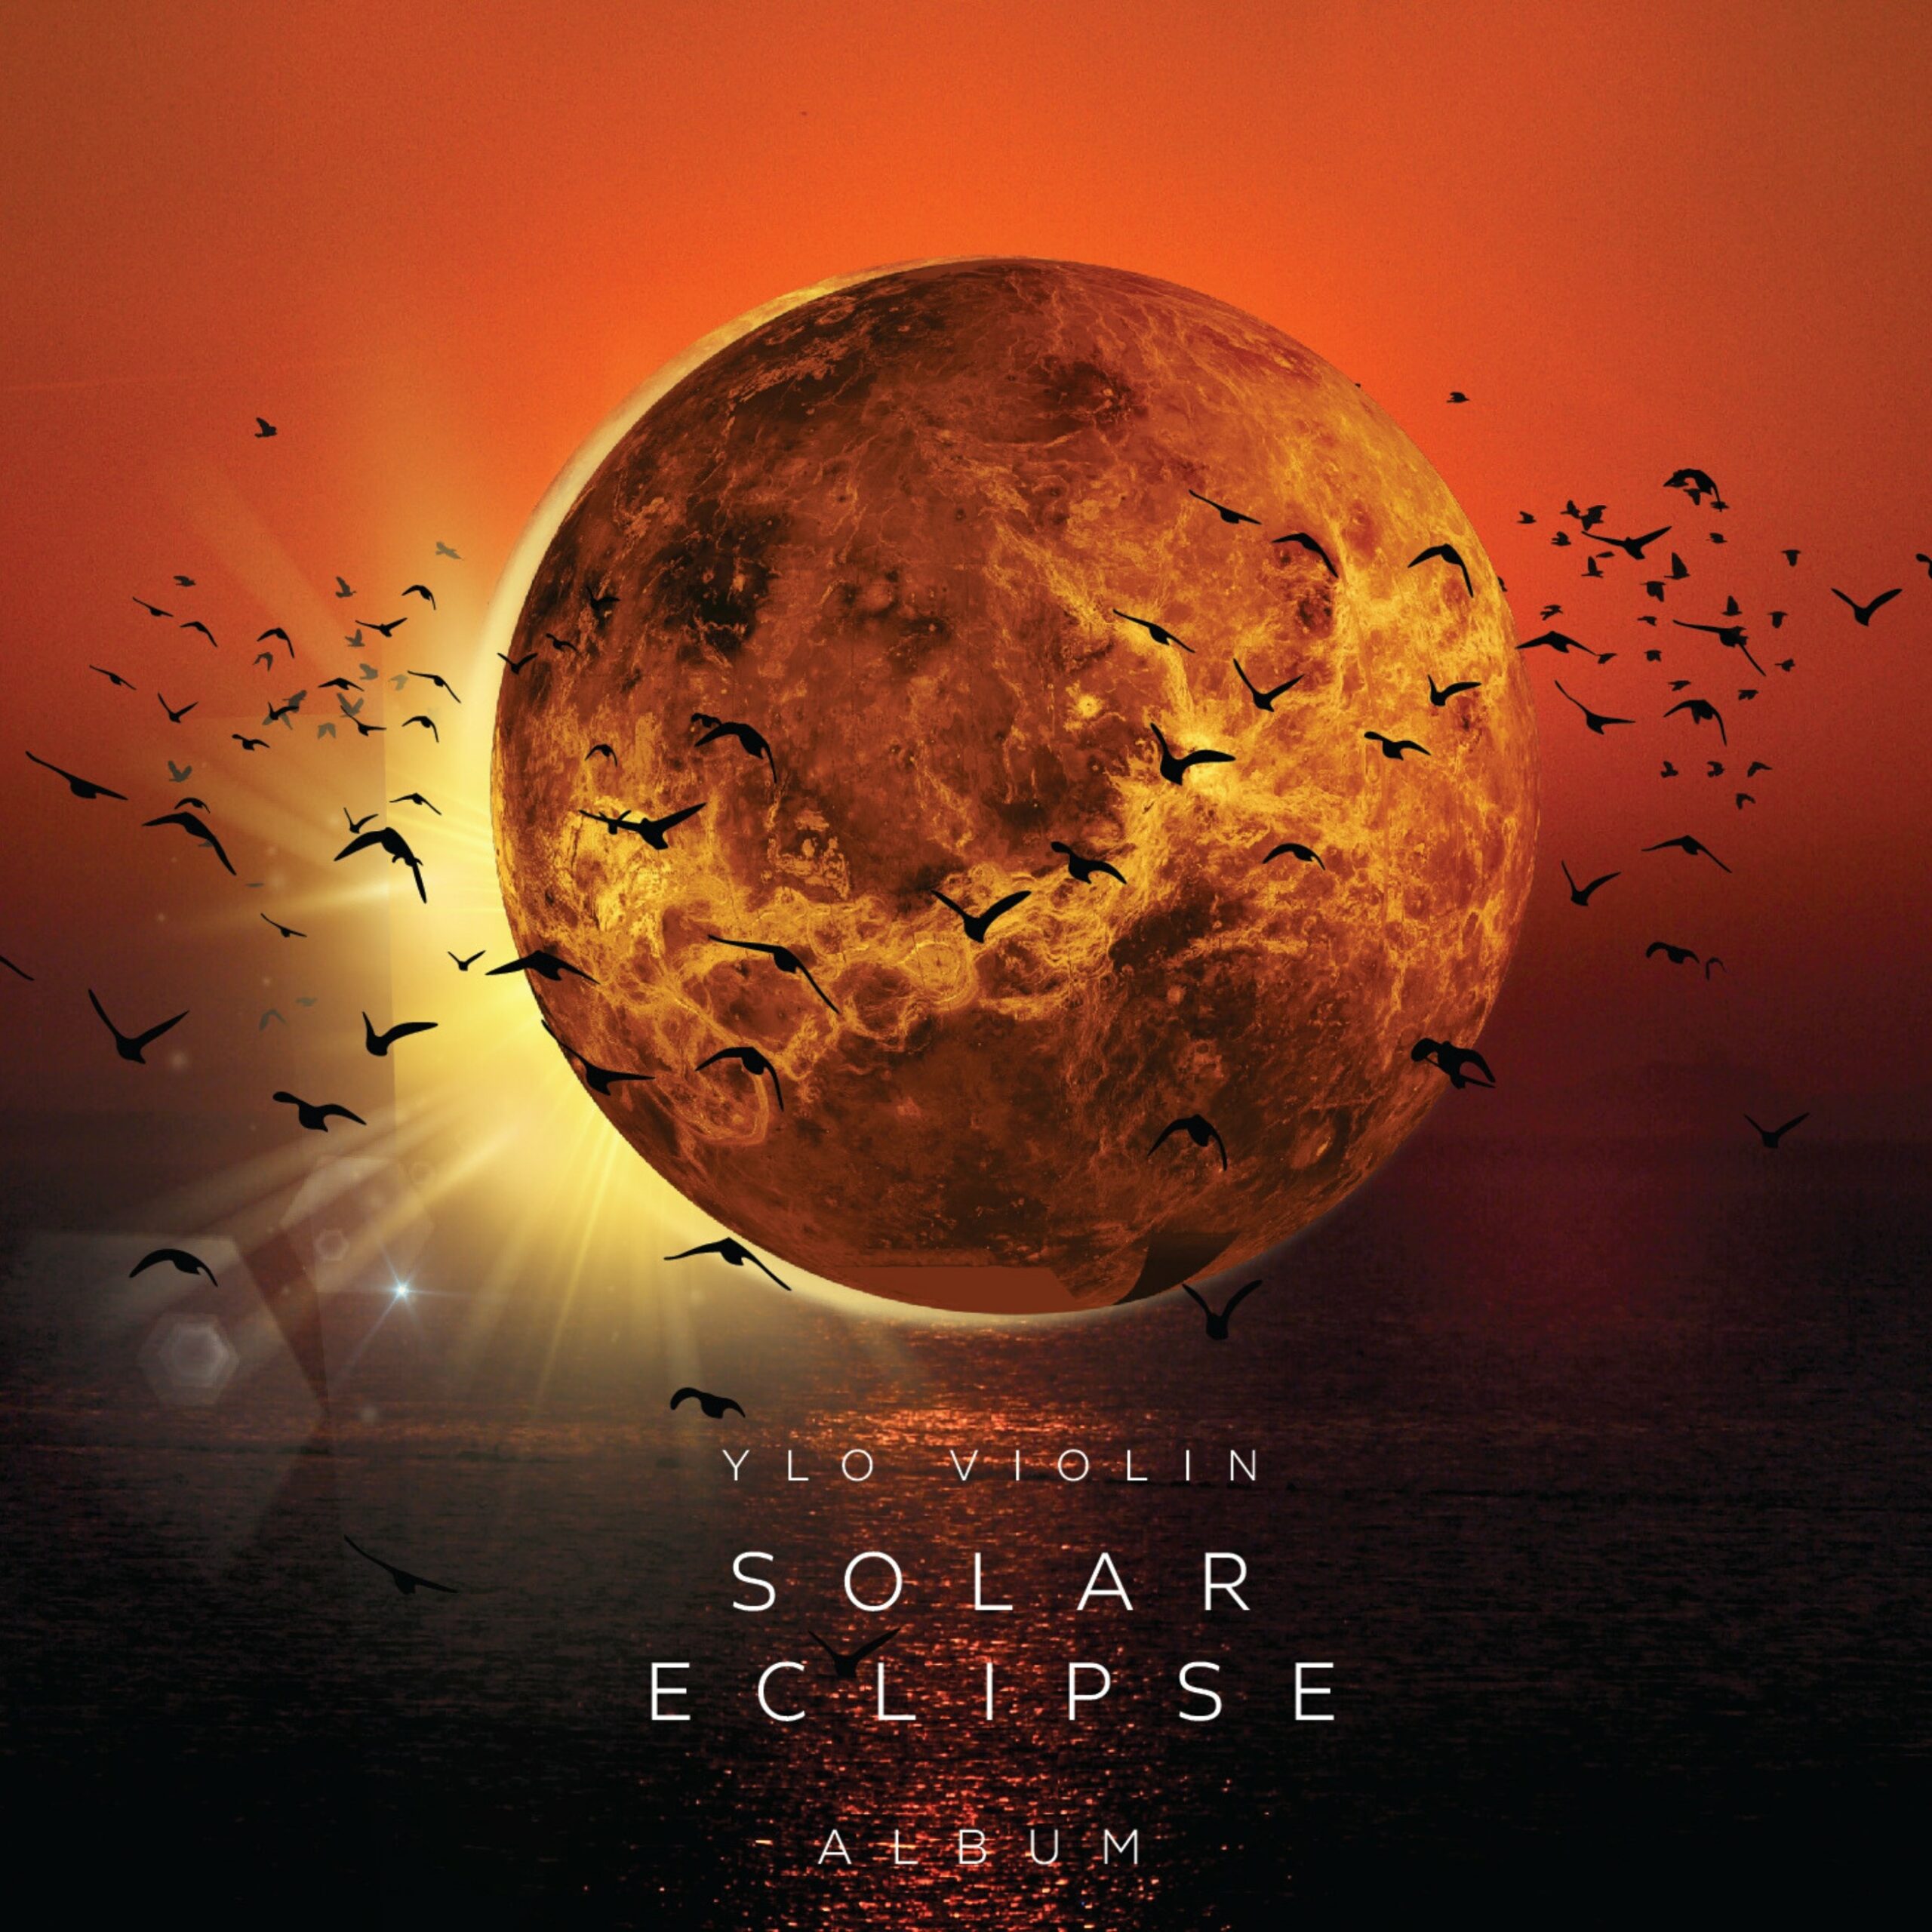 Solar Eclipse CD Album - YLO Violin Front image JPG